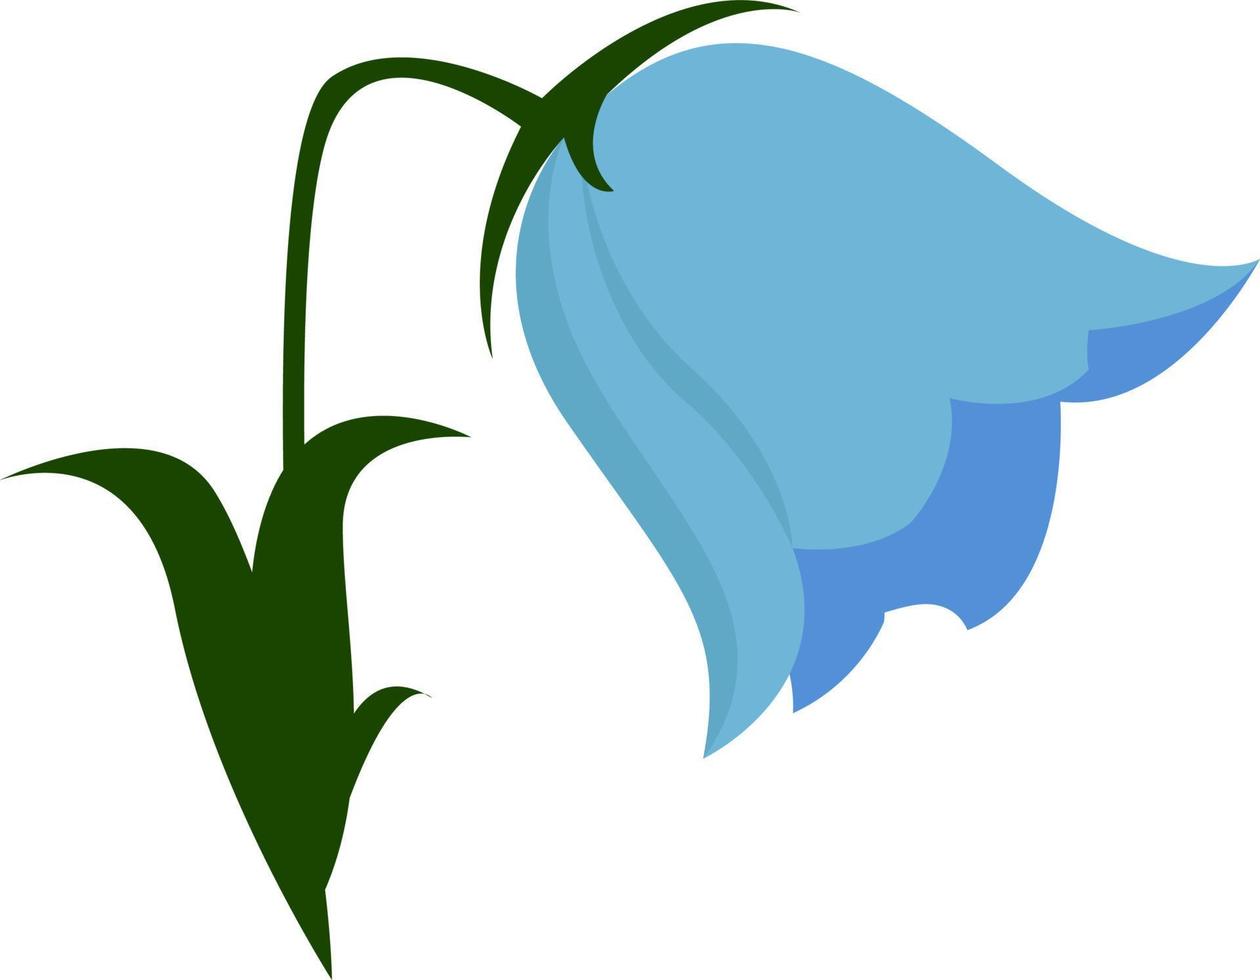 Blue flower, illustration, vector on white background.